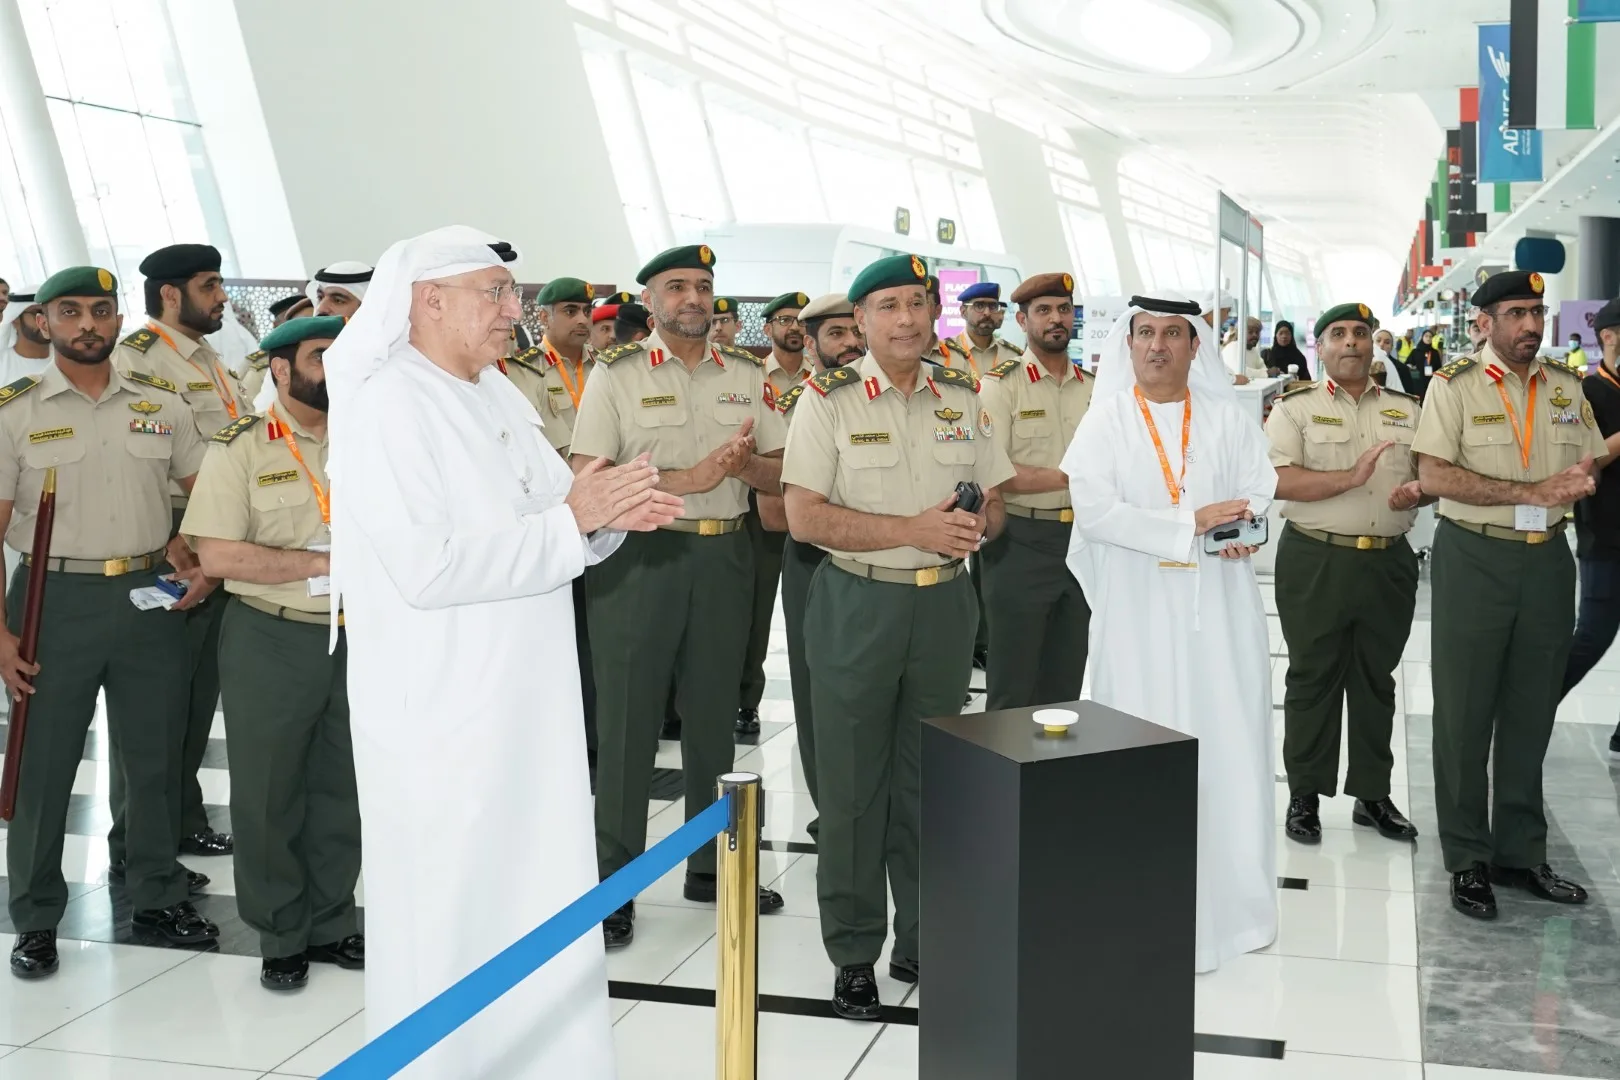 В Абу-Даби открылась 6-я ярмарка профессий национальной службы